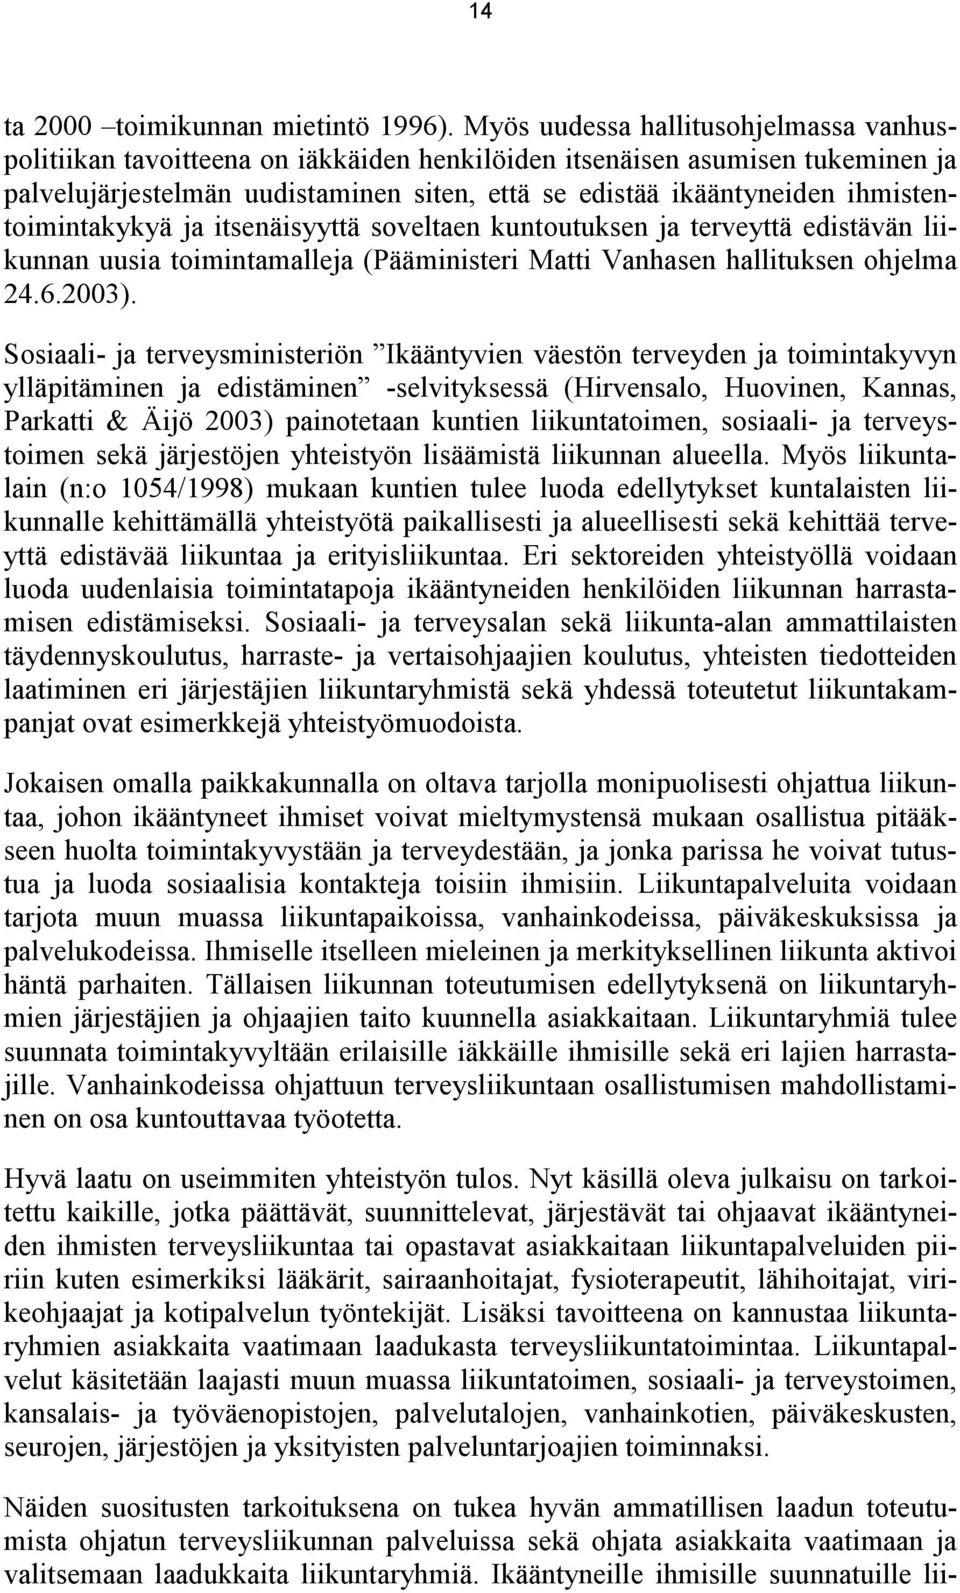 ihmistentoimintakykyä ja itsenäisyyttä soveltaen kuntoutuksen ja terveyttä edistävän liikunnan uusia toimintamalleja (Pääministeri Matti Vanhasen hallituksen ohjelma 24.6.2003).